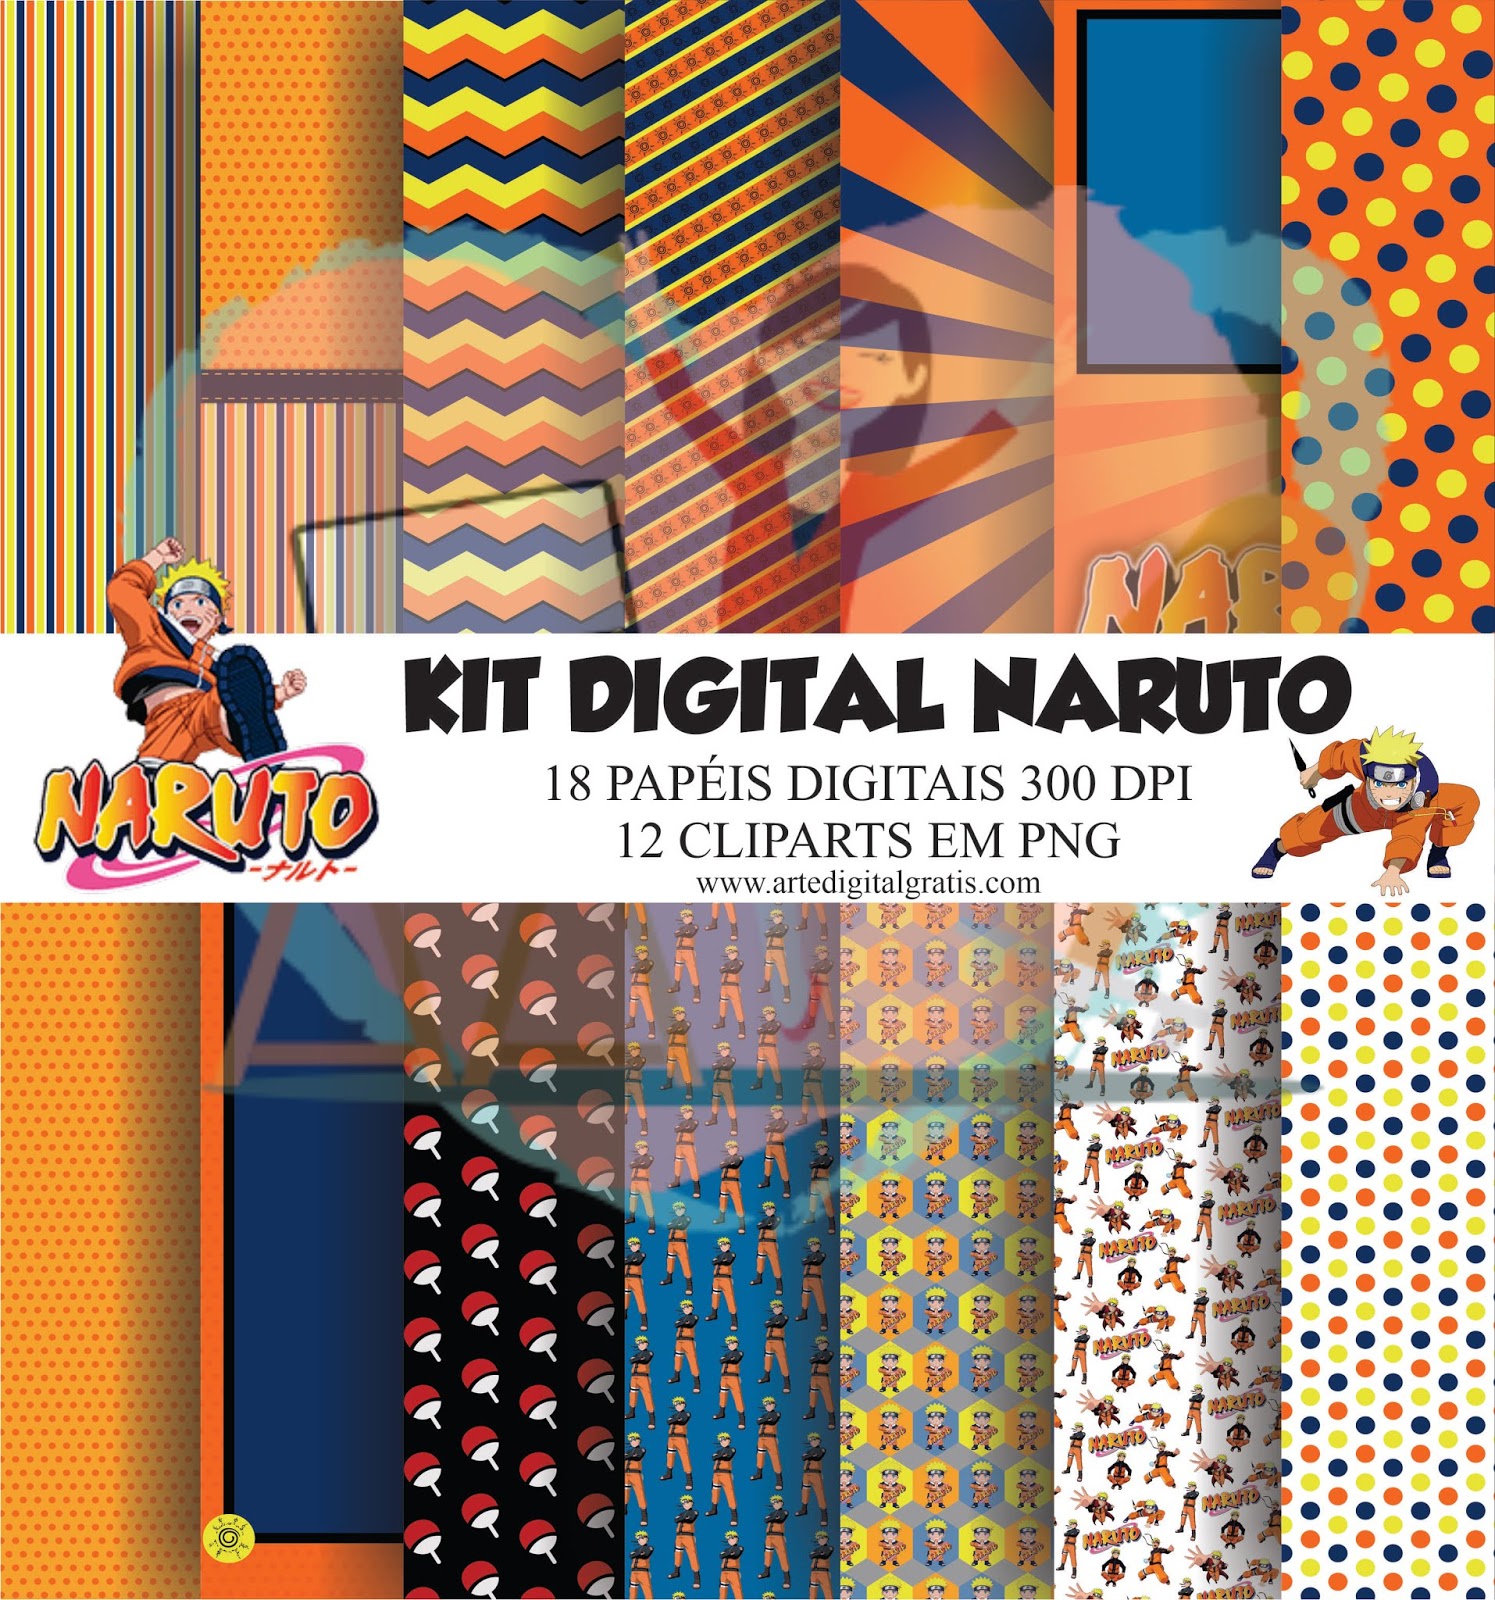 KIT DIGITAL NARUTO GRÁTIS - Arte Digital Grátis